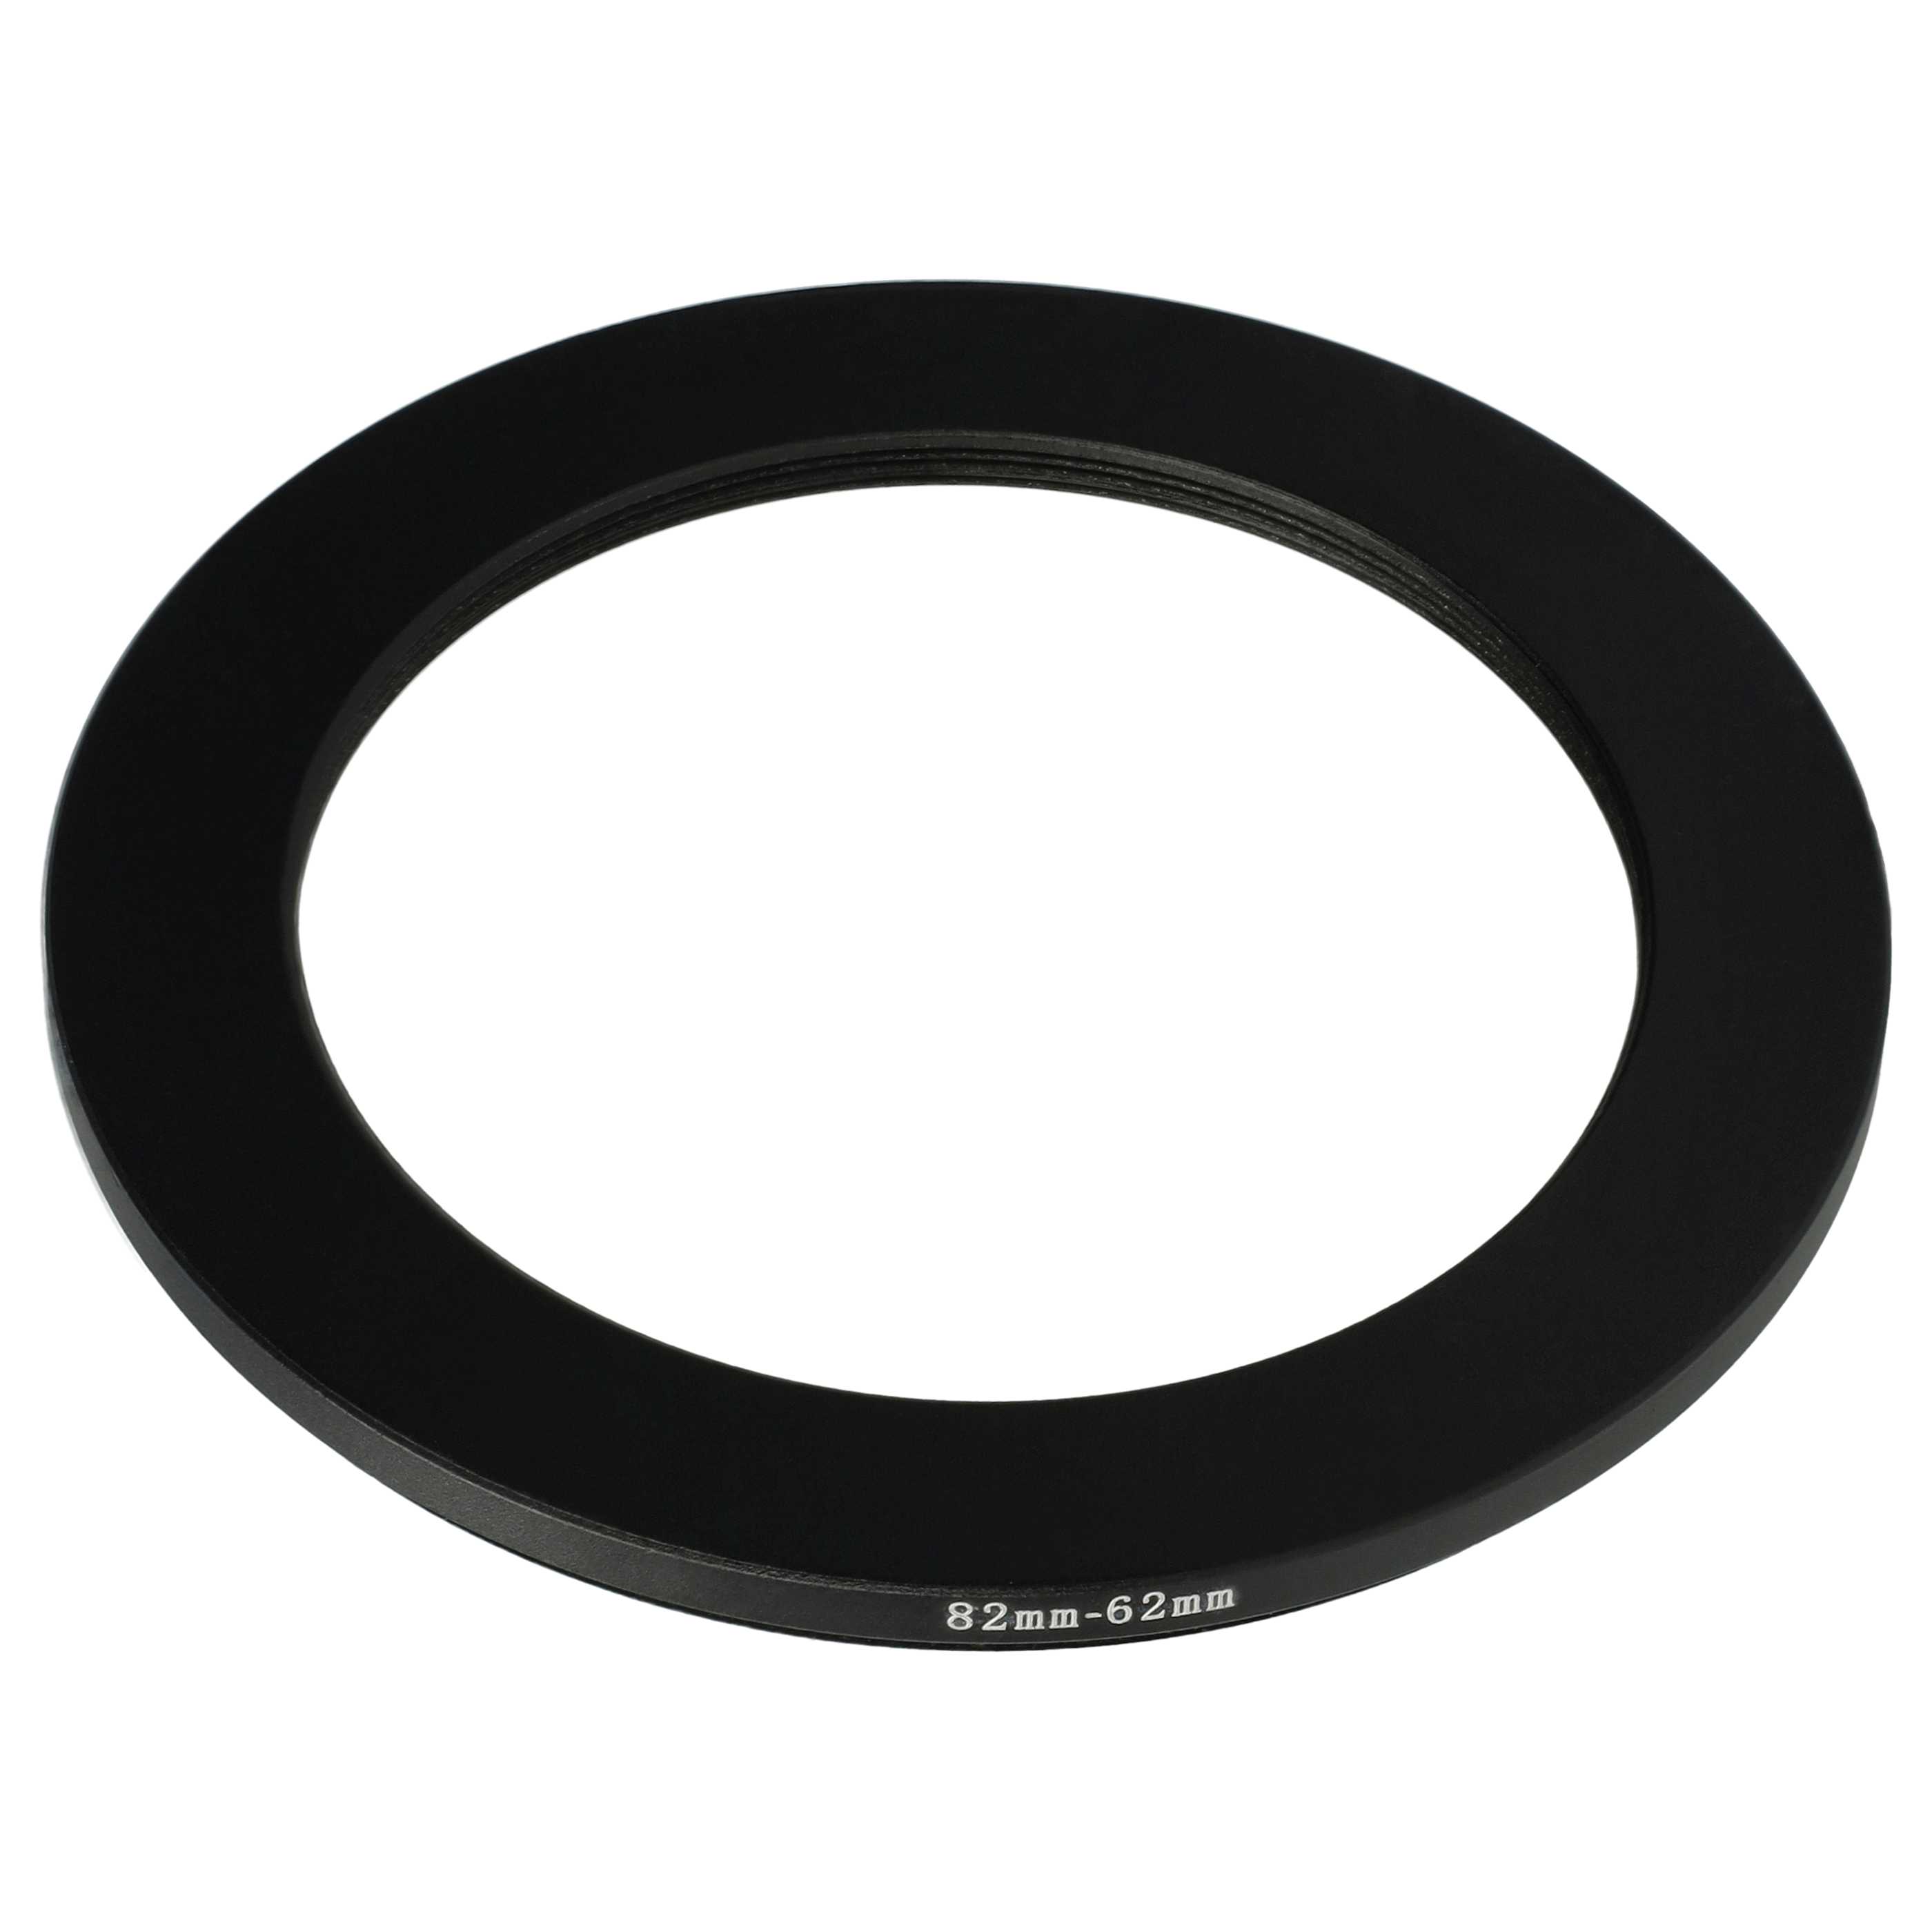 Anello adattatore step-down da 82 mm a 62 mm per obiettivo fotocamera - Adattatore filtro, metallo, nero